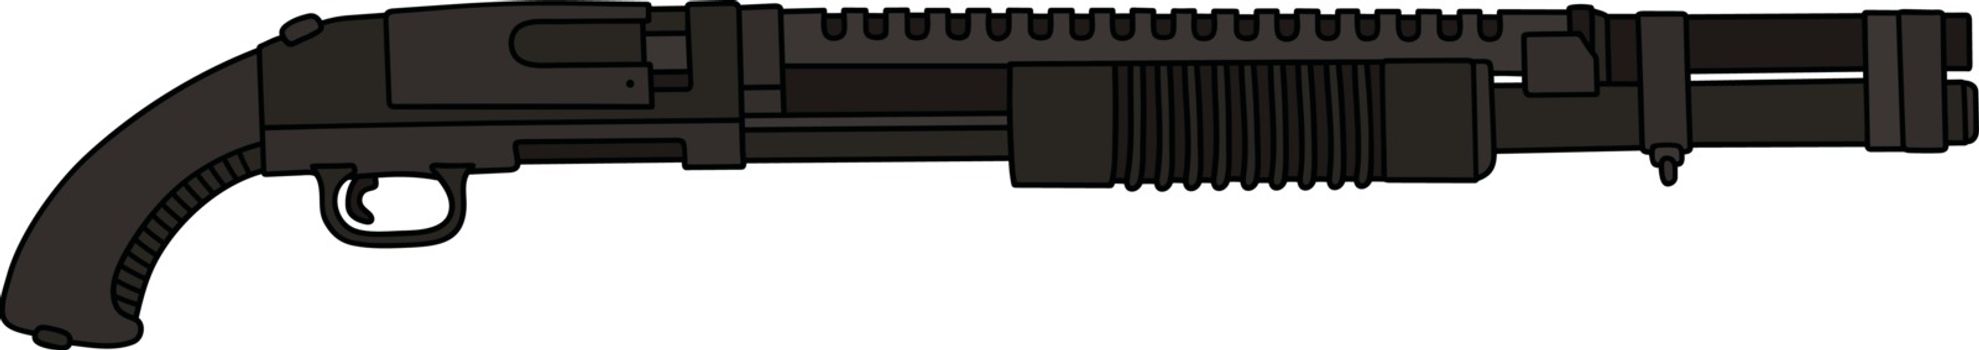 Hand drawing of a tactic pump shotgun